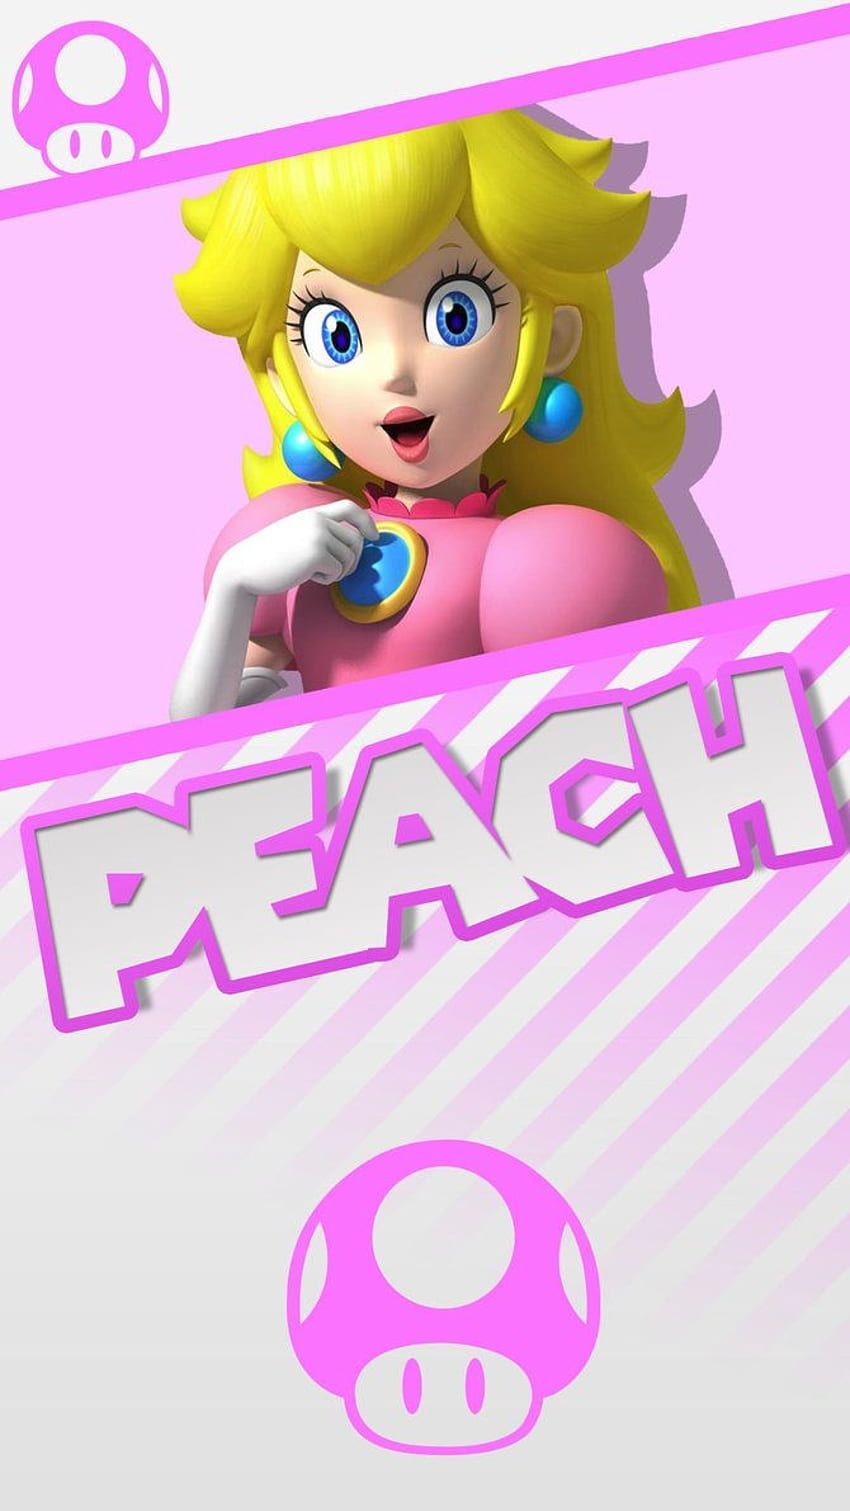 Nintendo Princess Peach aesthetic phone background, princess peach phone HD phone wallpaper